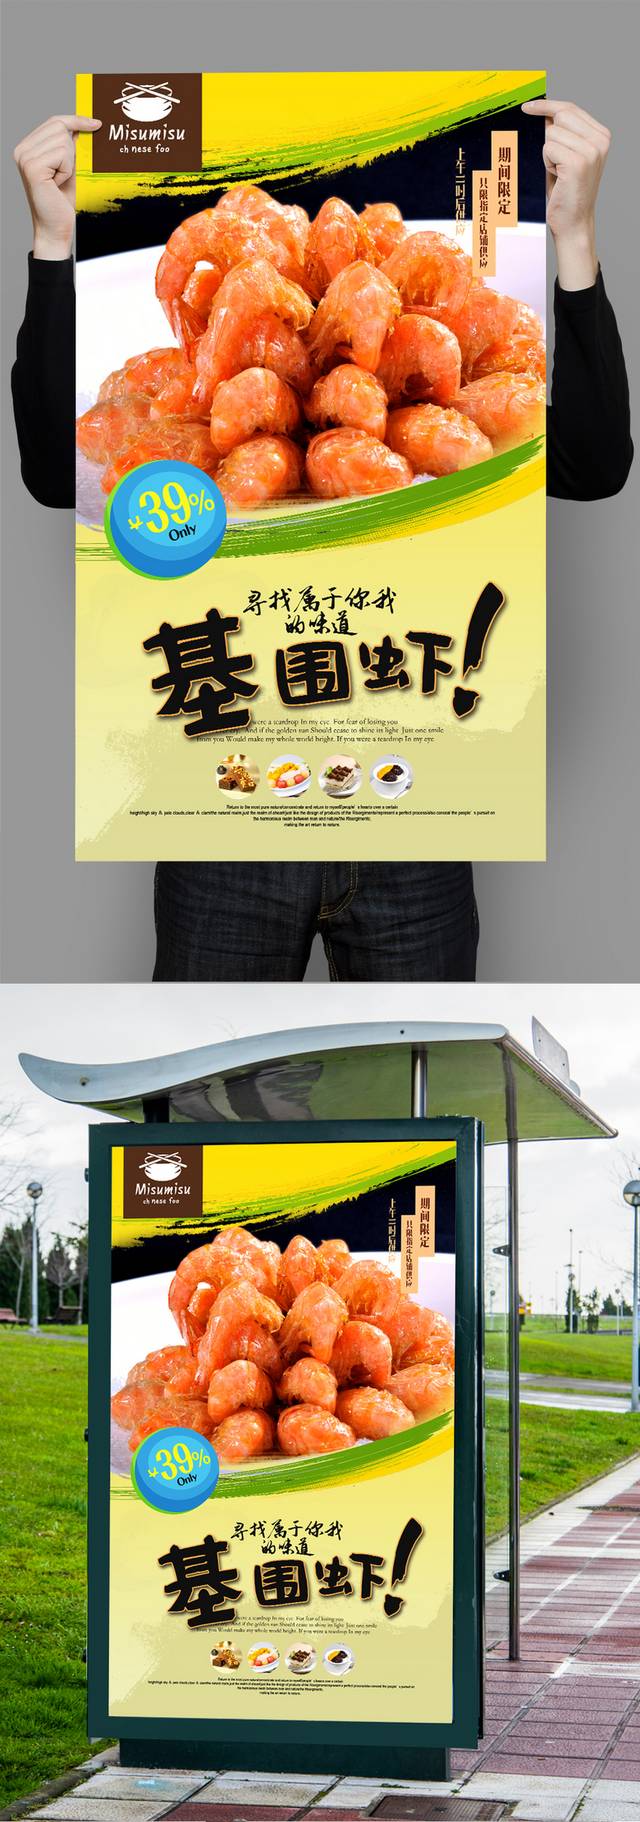 经典基围虾促销海报设计psd